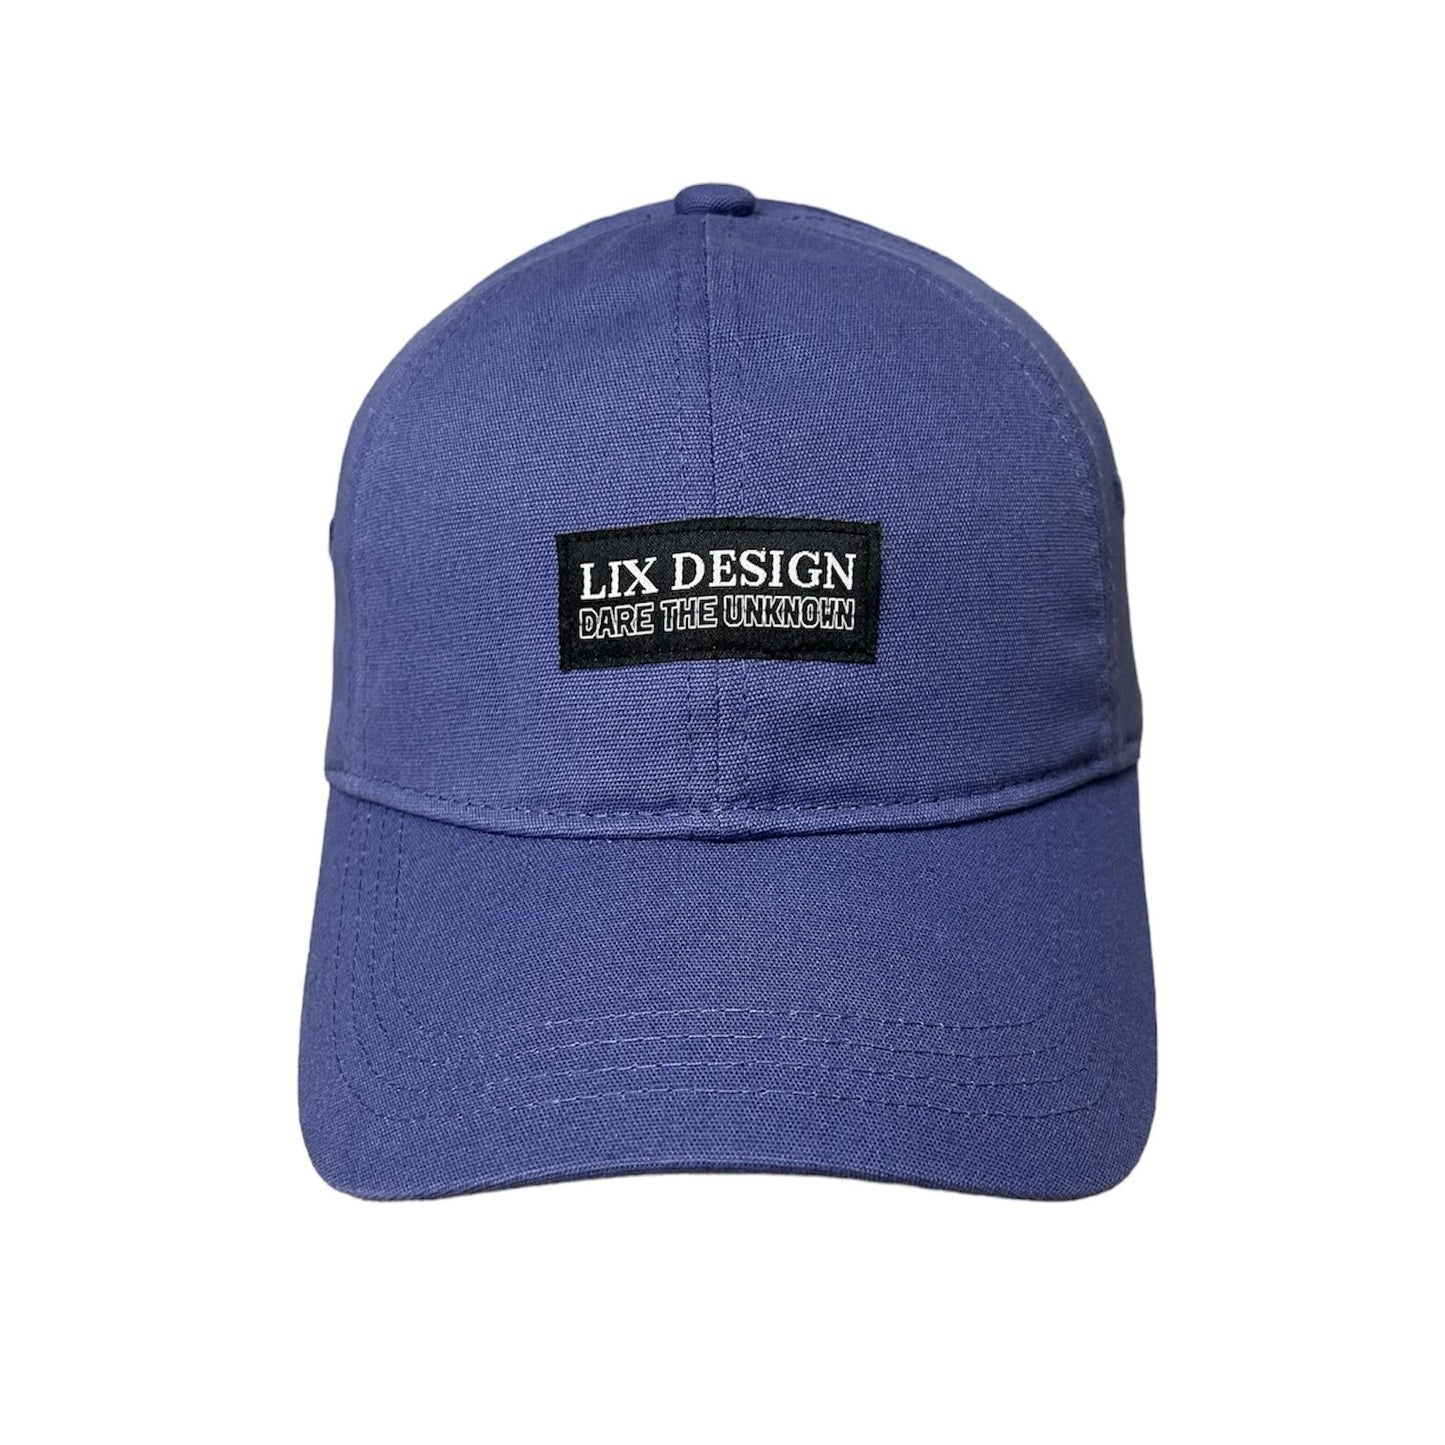 Dad hat conçu par Lix Design fait de matières recyclées.  